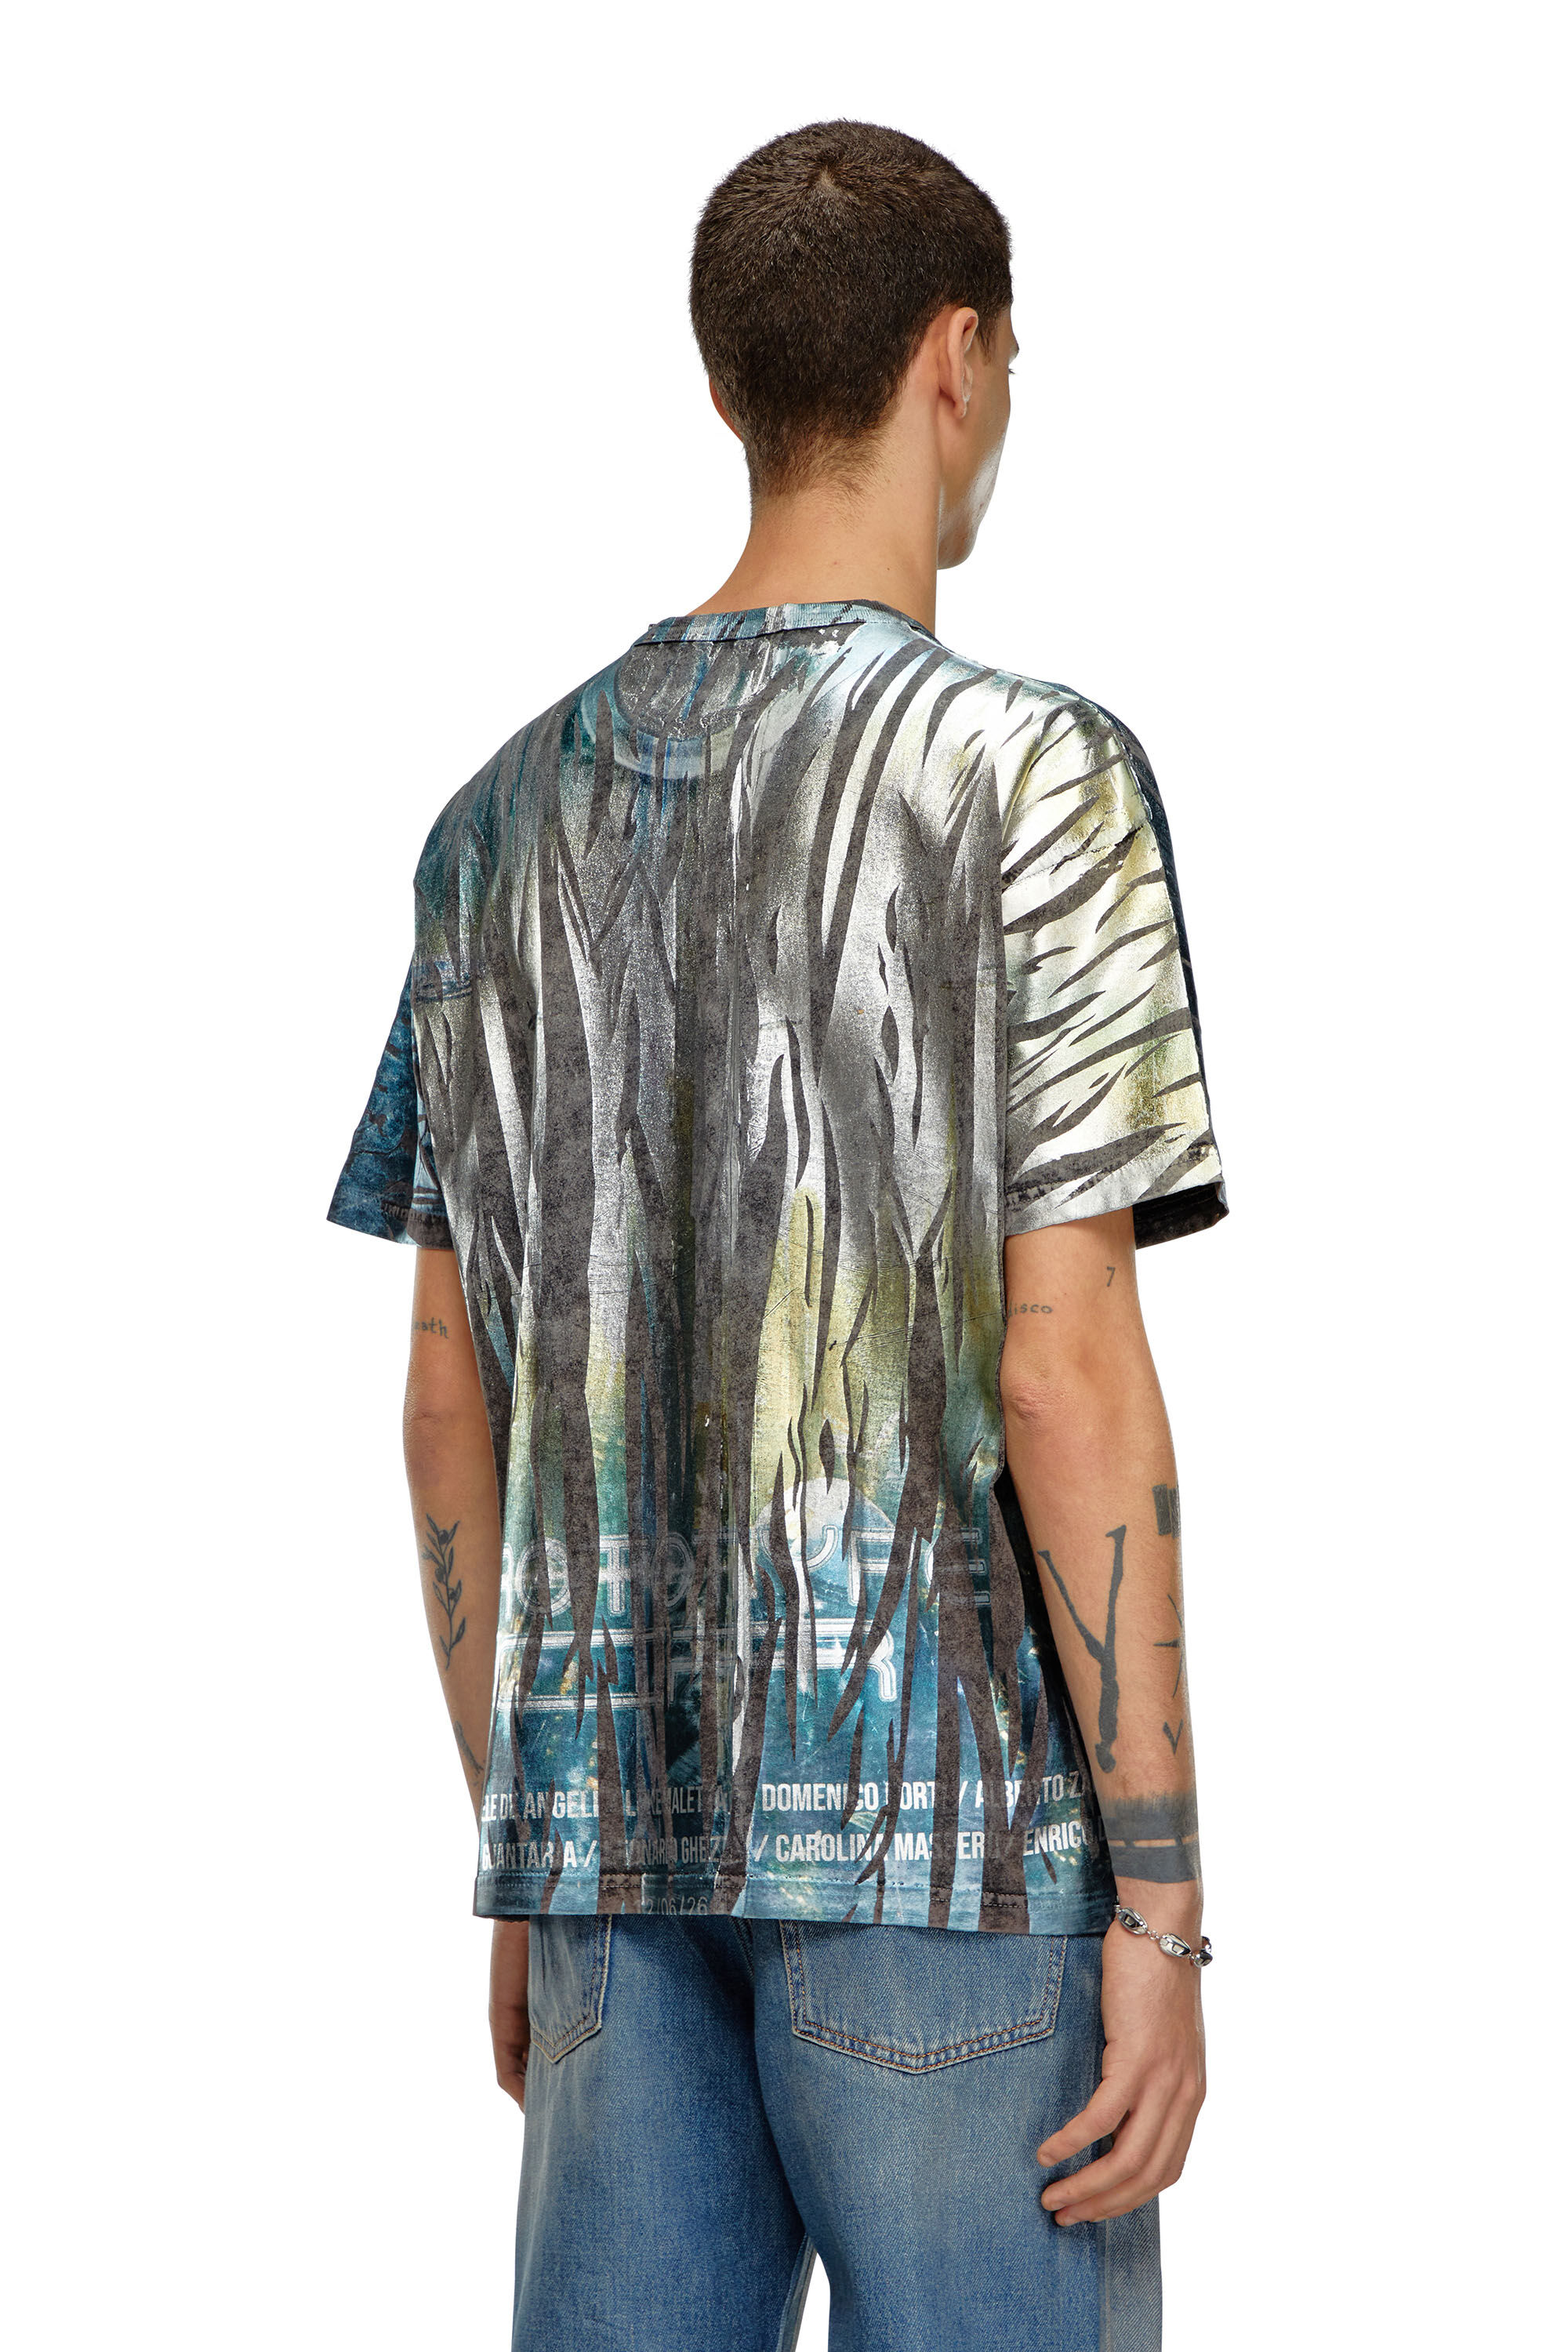 Diesel - T-BORD-Q1, Herren T-Shirt mit Knitterfolien-Behandlung in Bunt - Image 4